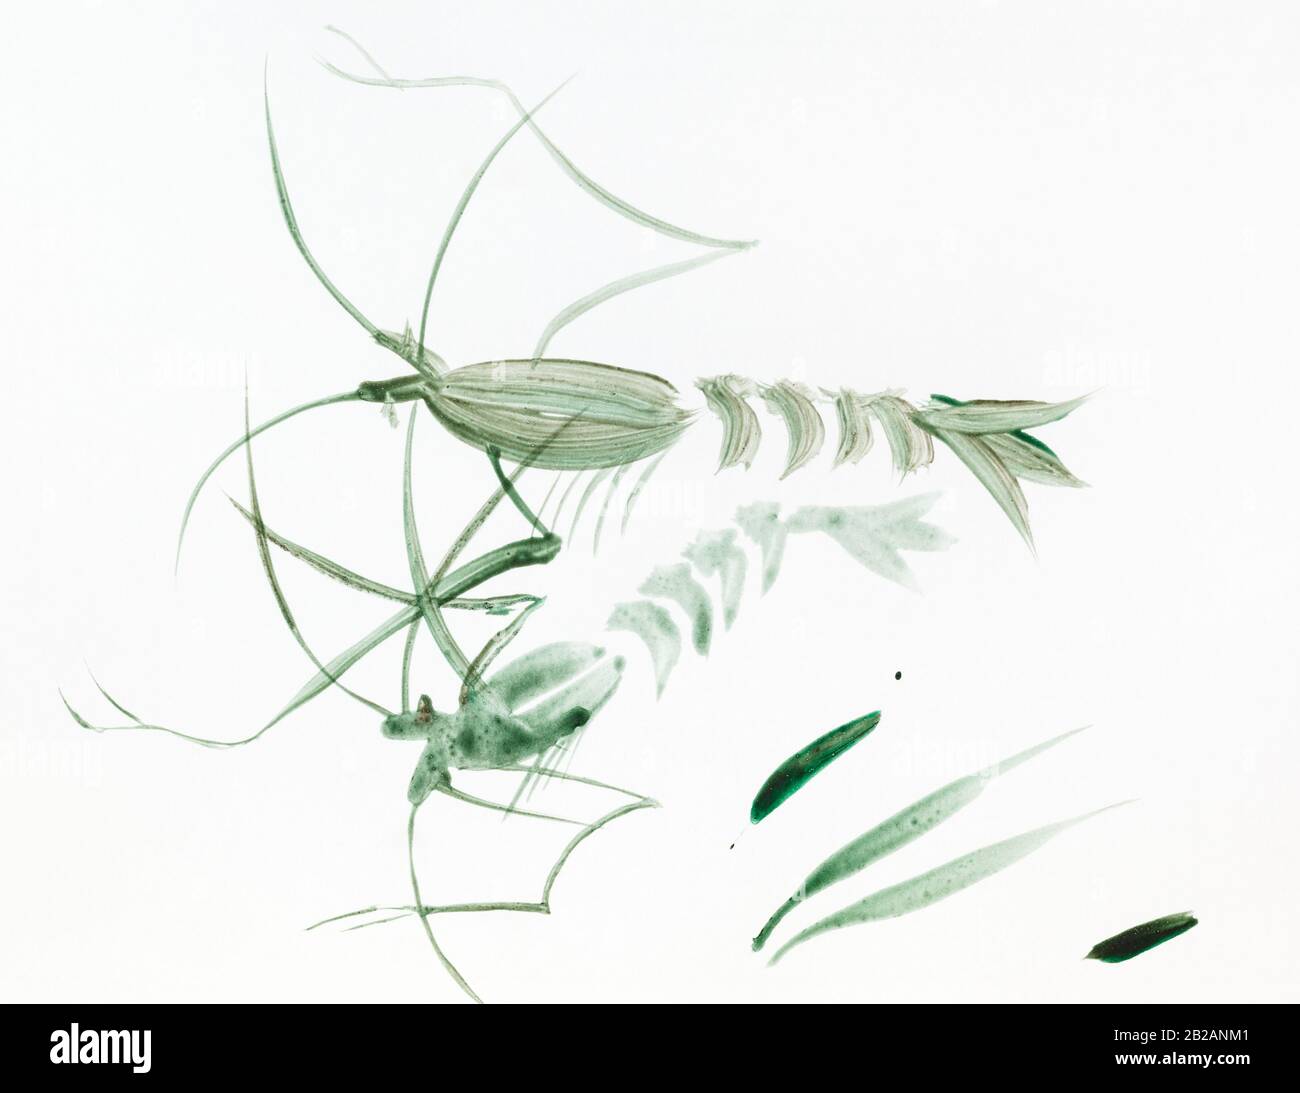 paire de crevettes vertes dessinées à la main par aquarelle sur papier blanc dans le style sumi-e (suibokuga) Banque D'Images